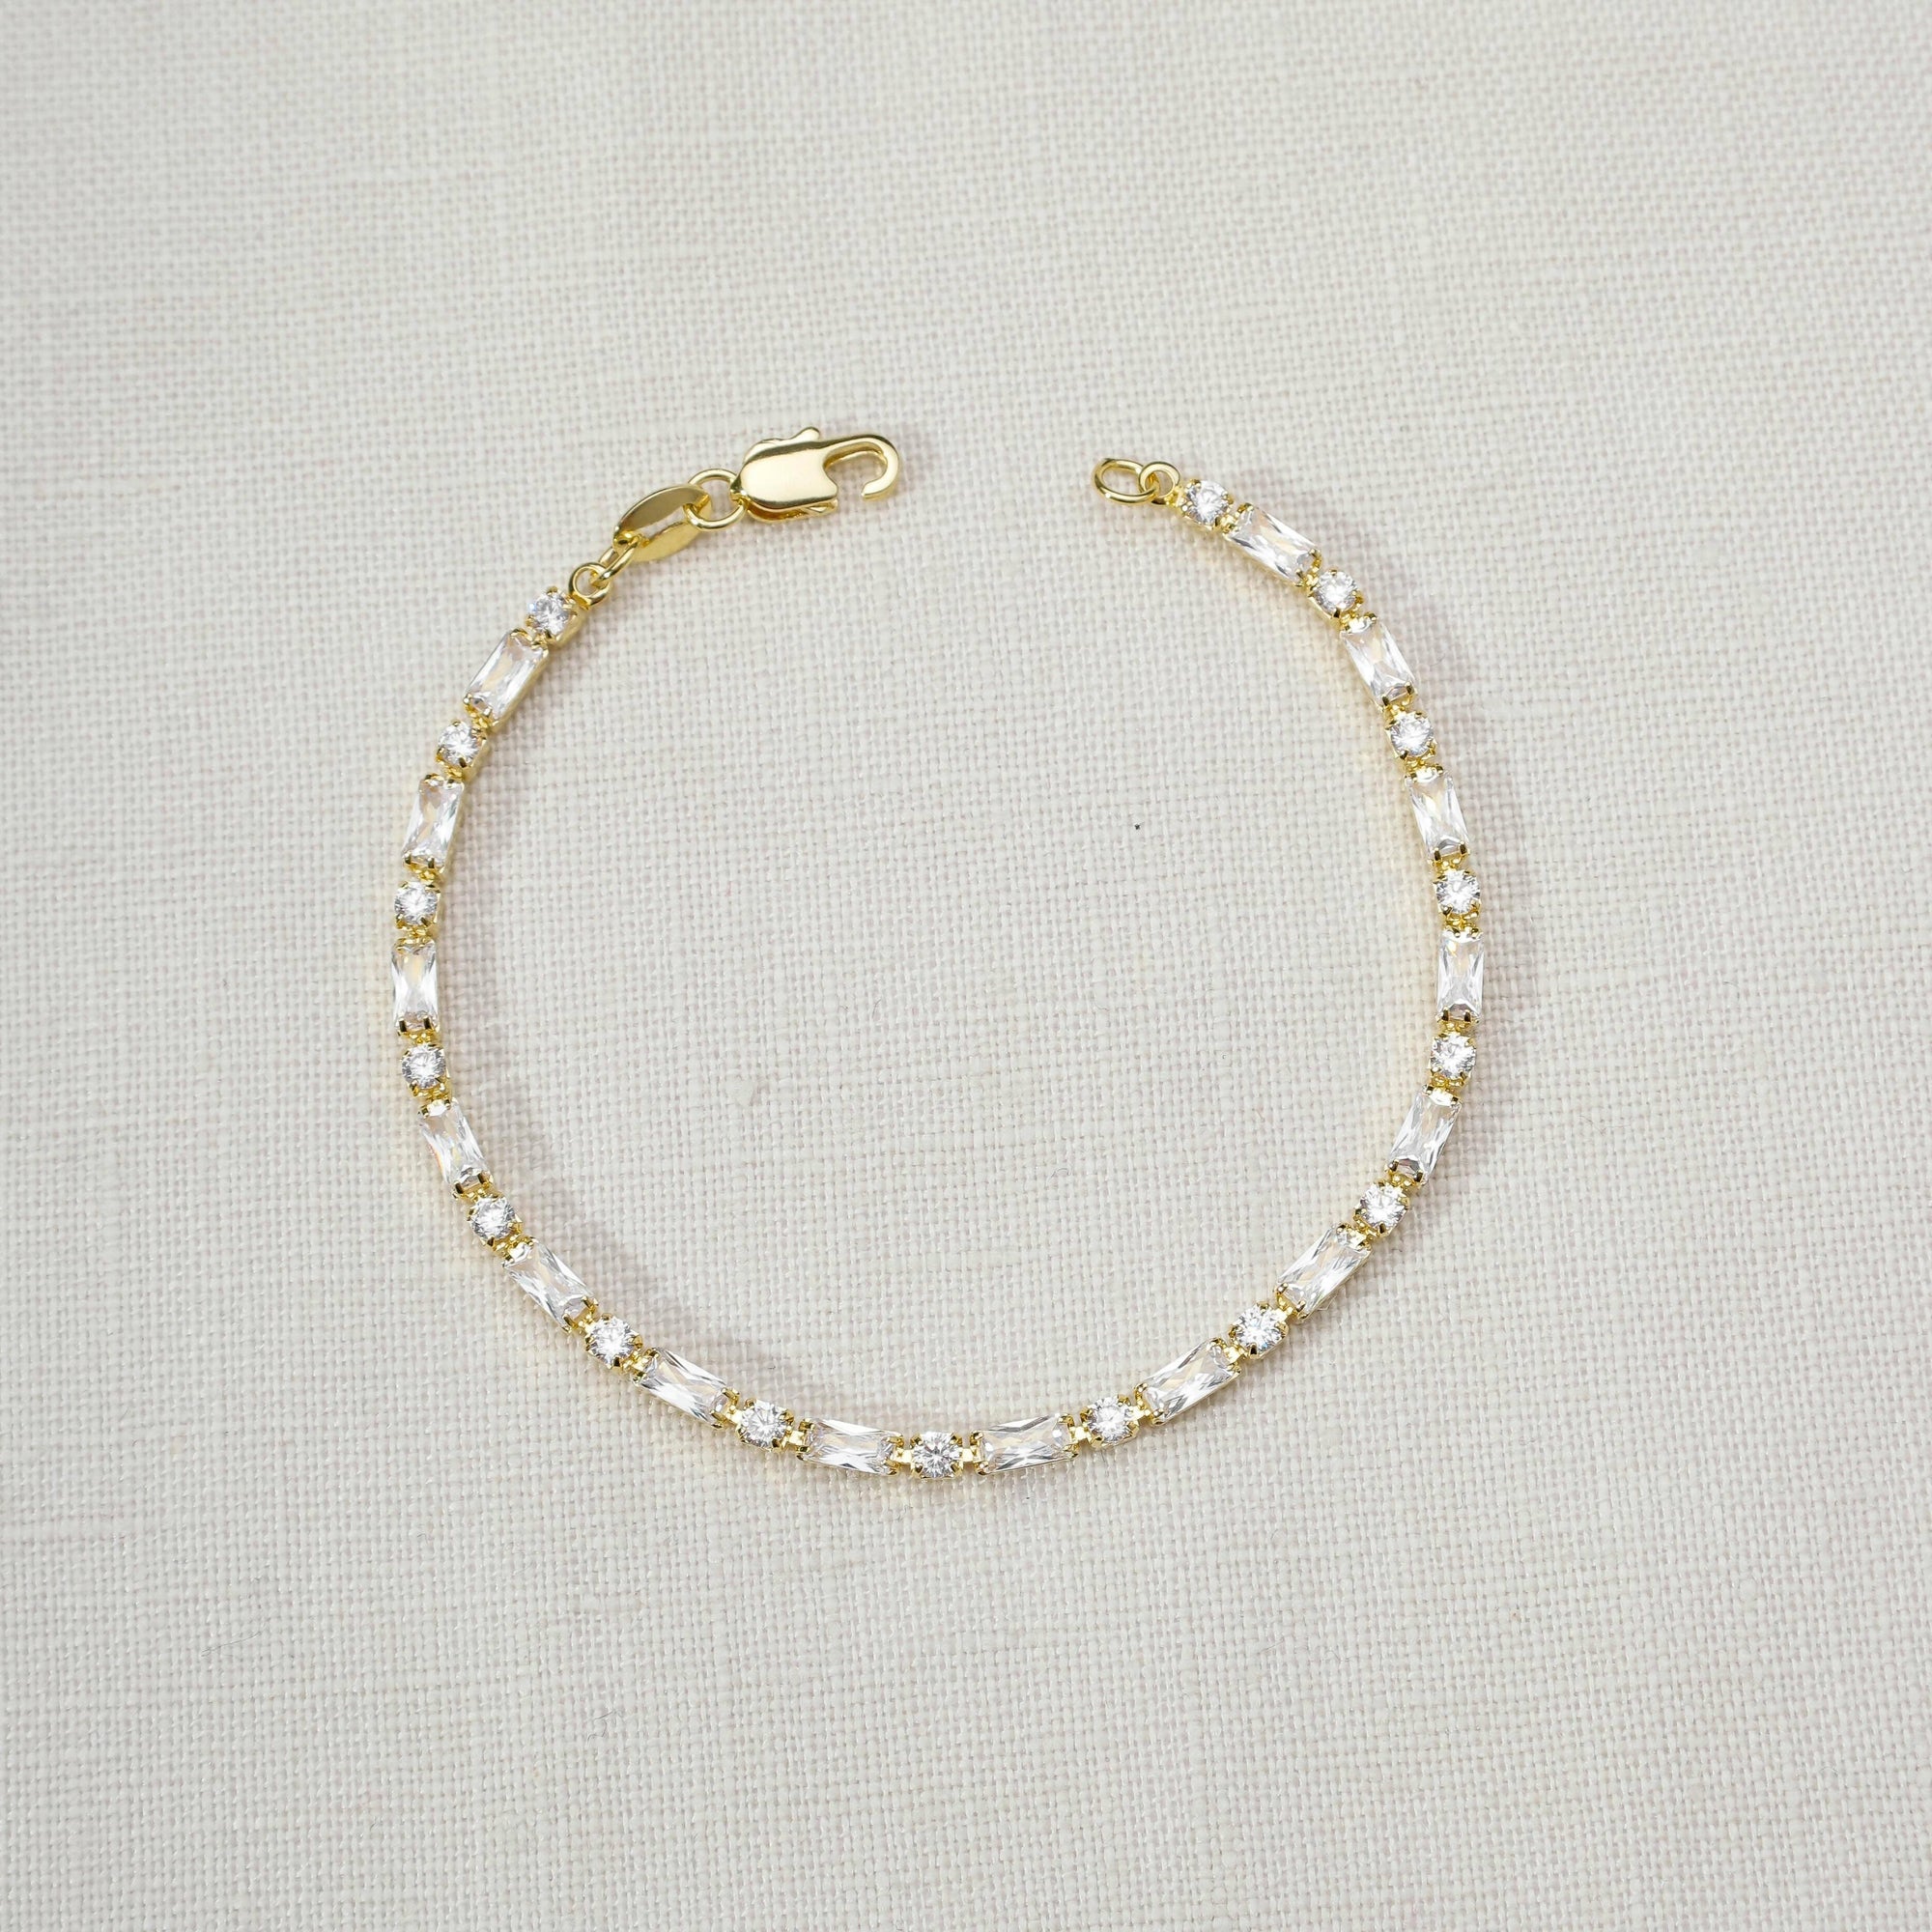 Baguette CZ Tennis Bracelet, 18k Gold Filled